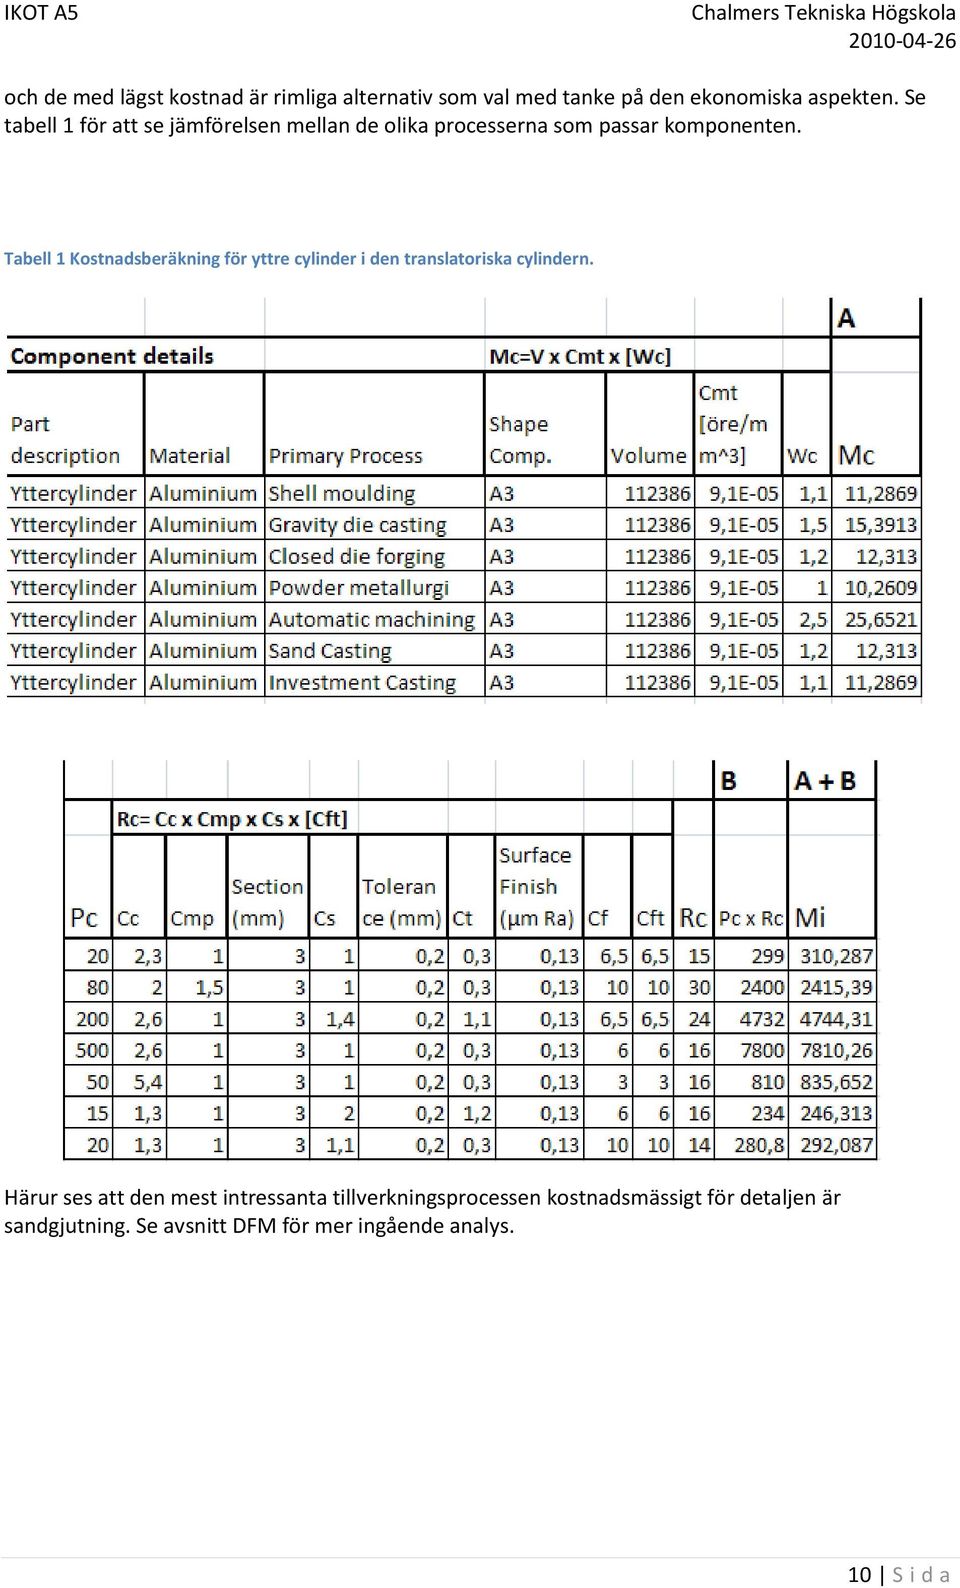 Tabell 1 Kostnadsberäkning för yttre cylinder i den translatoriska cylindern.